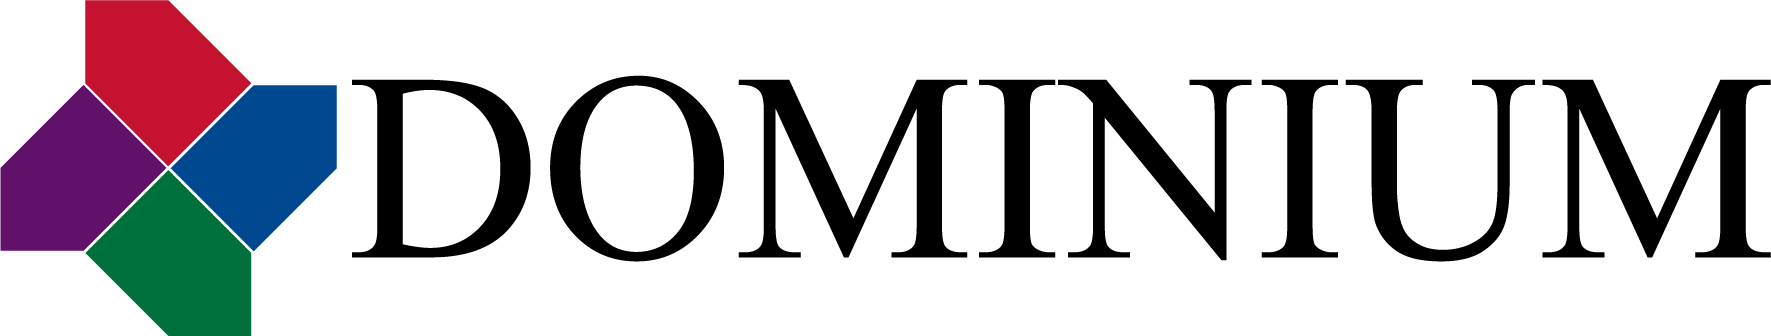 Dominium_Logo.png